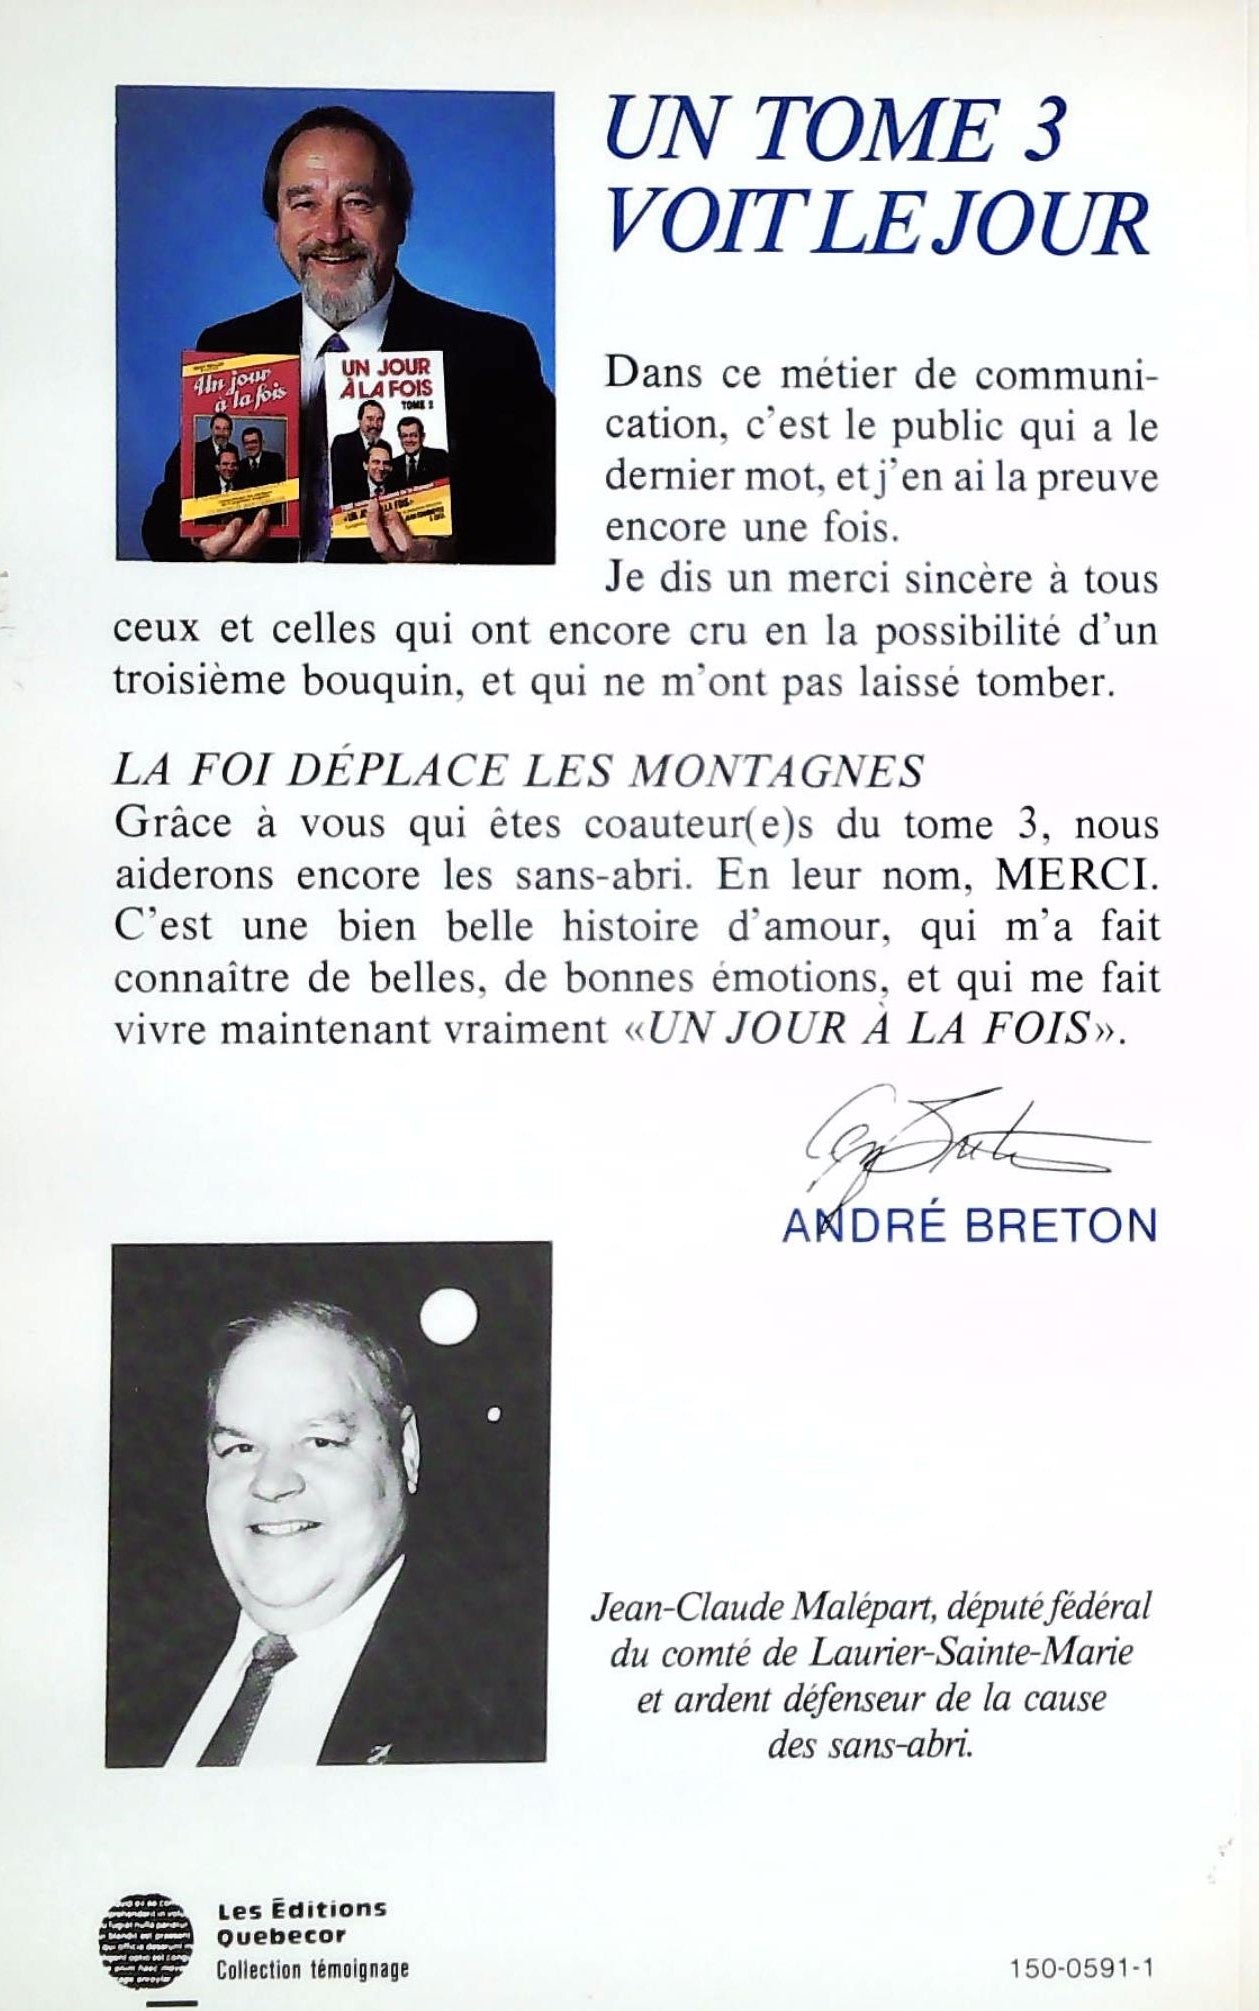 Un jour à la fois # 3 (André Breton)